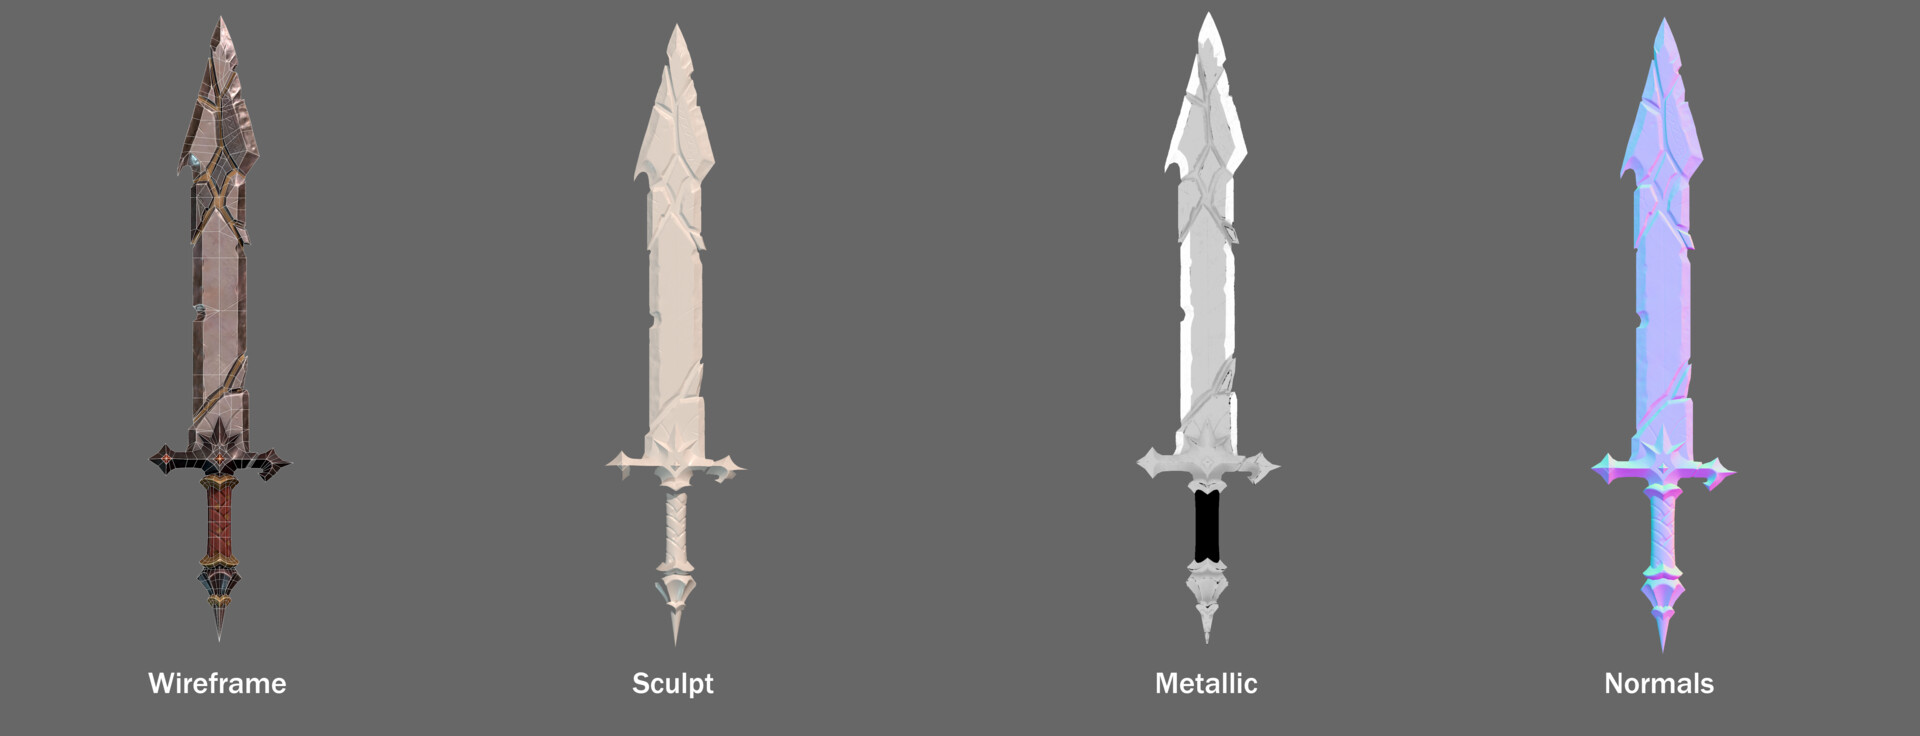 Vampire Sword (concept from Moniek Schilder) - 3D model by